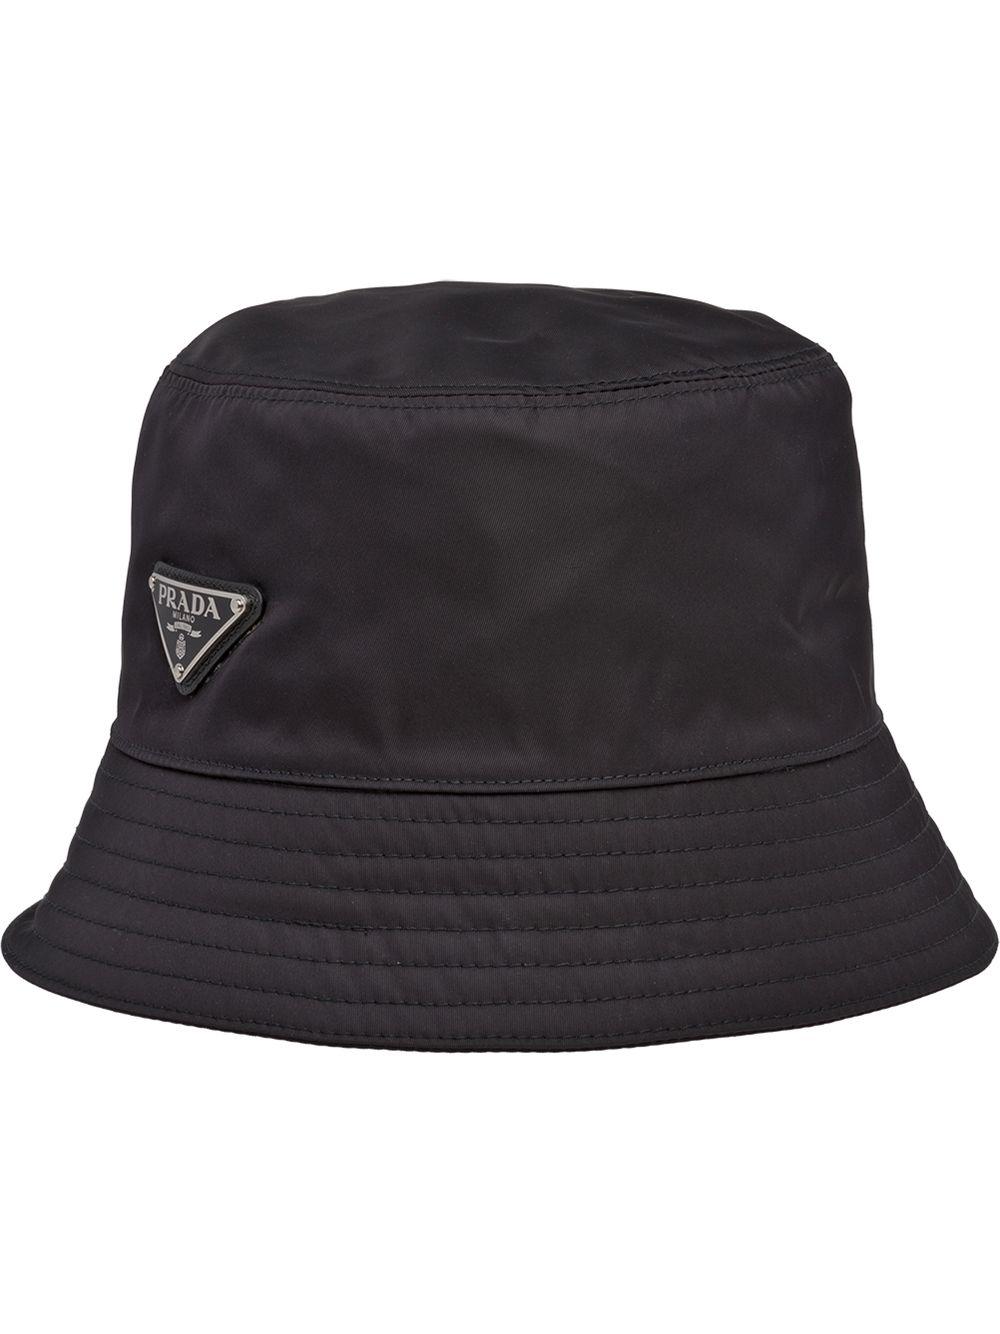 Prada Black nylon bucket hat